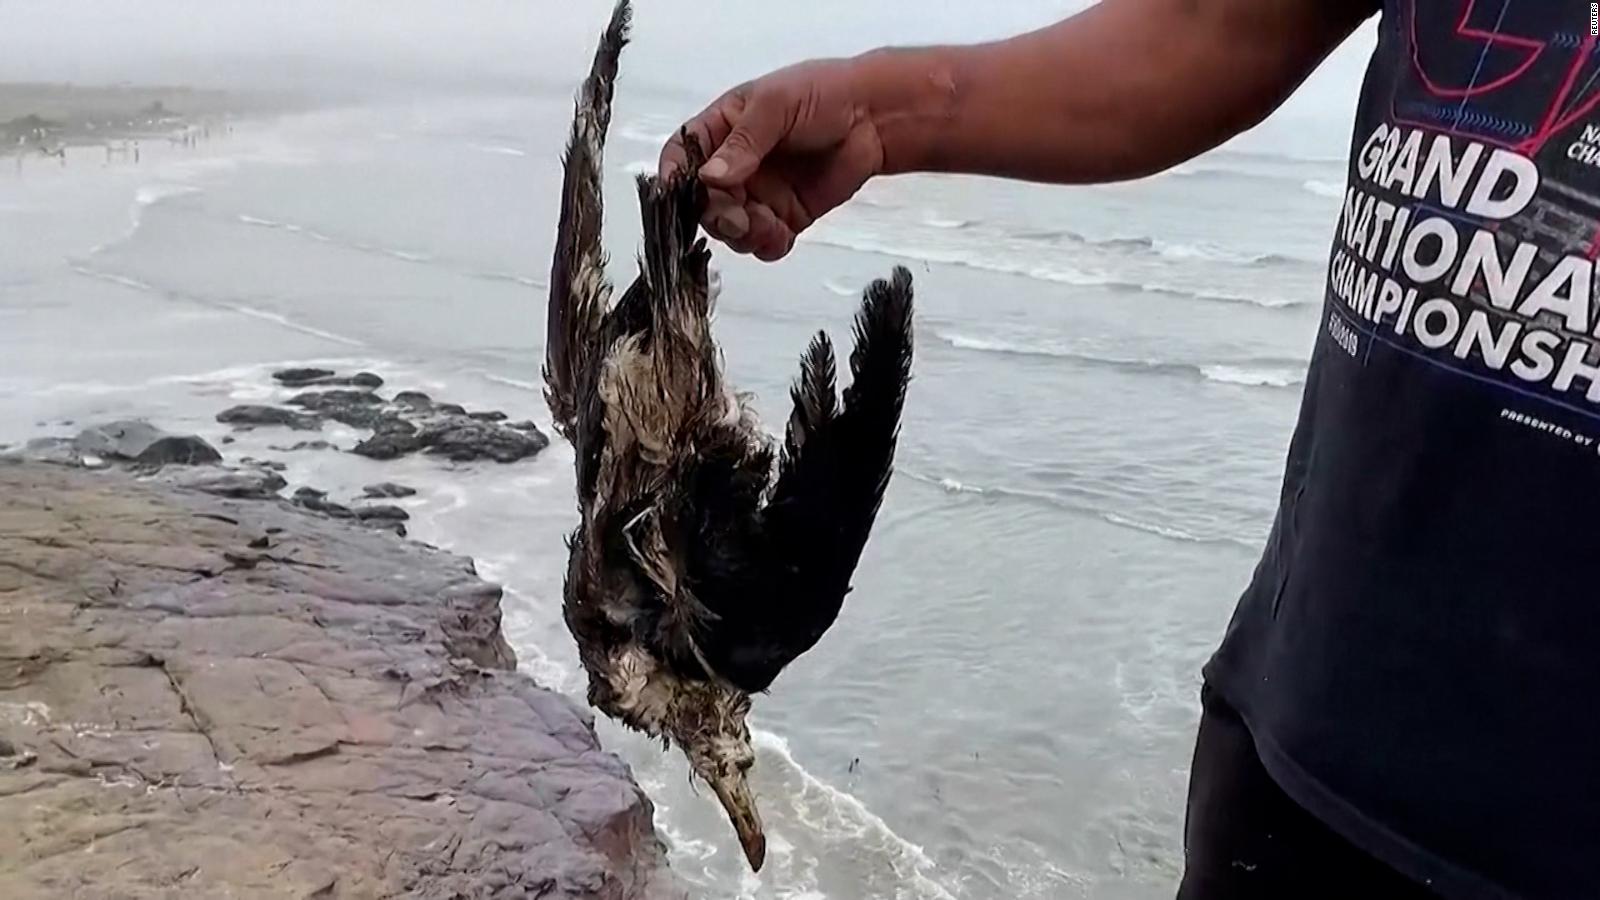 Animales muertos aparecen en playas de Perú tras derrame de petróleo